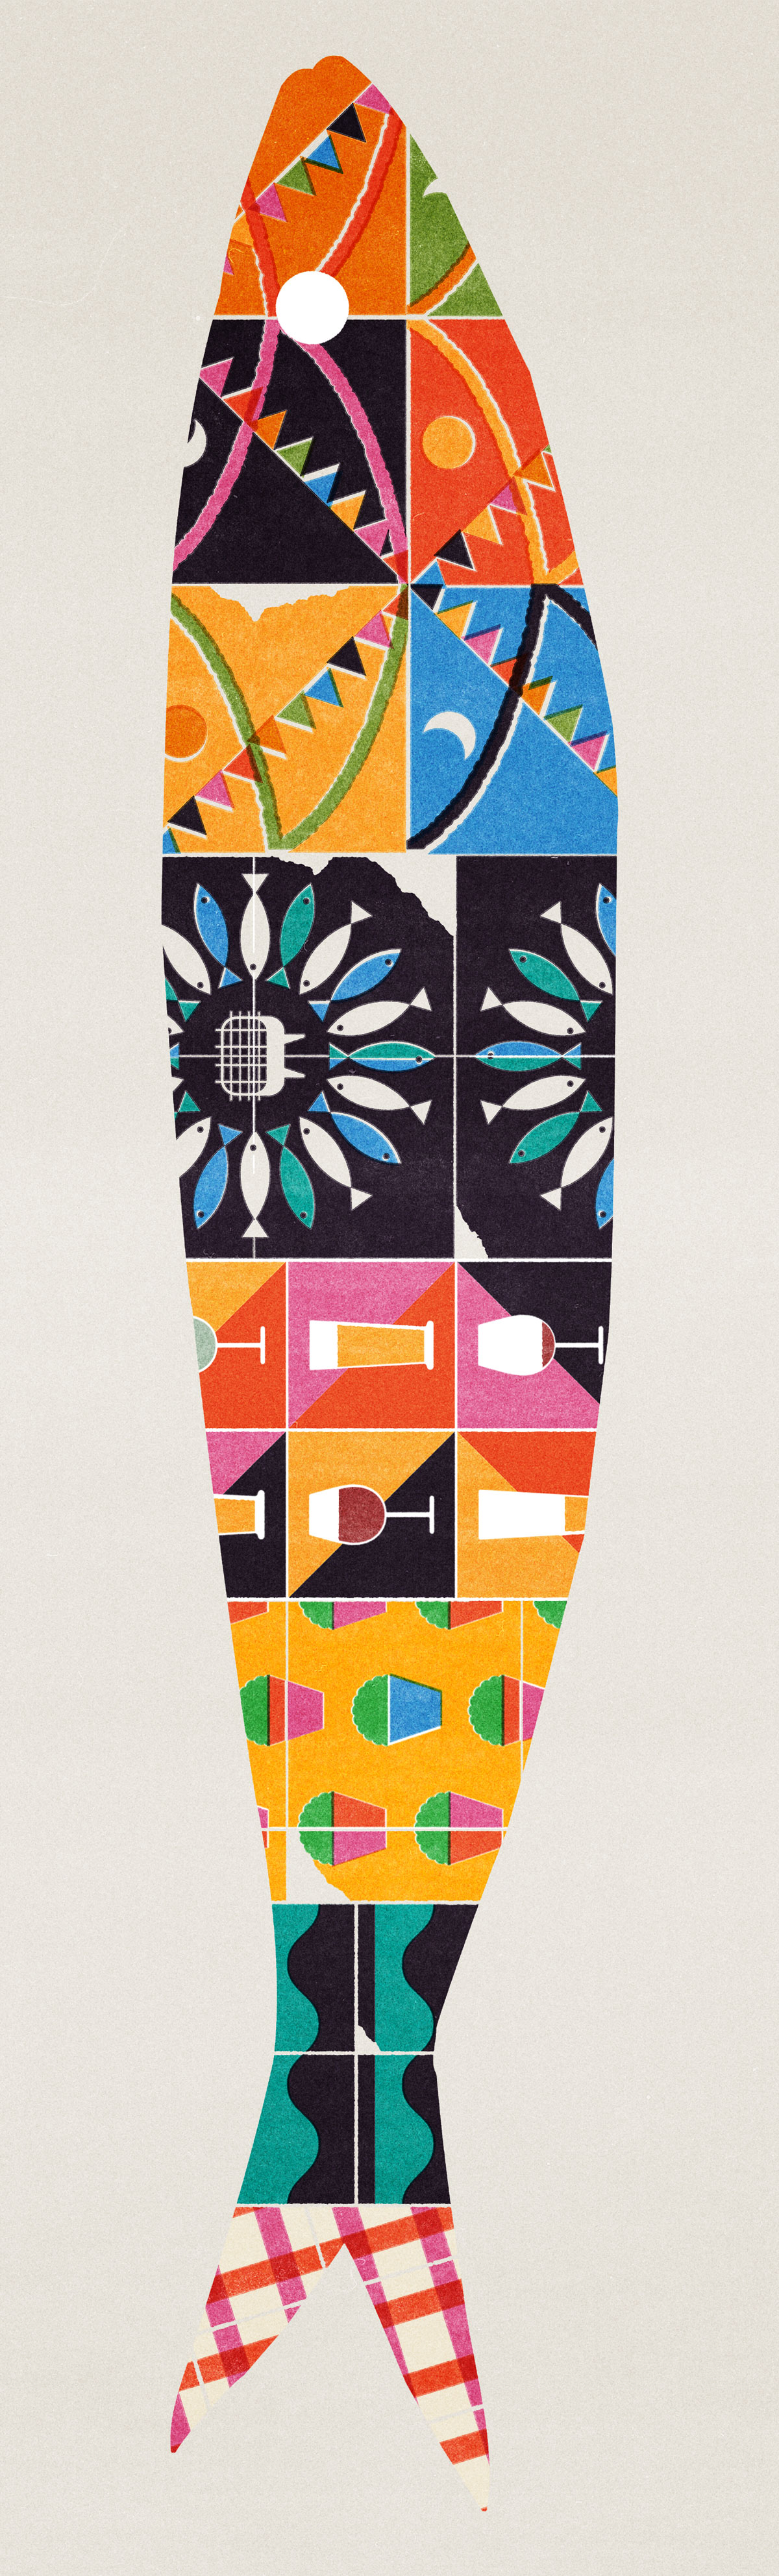 Ricardo Santos geometric diversity sardine 2019 illustration